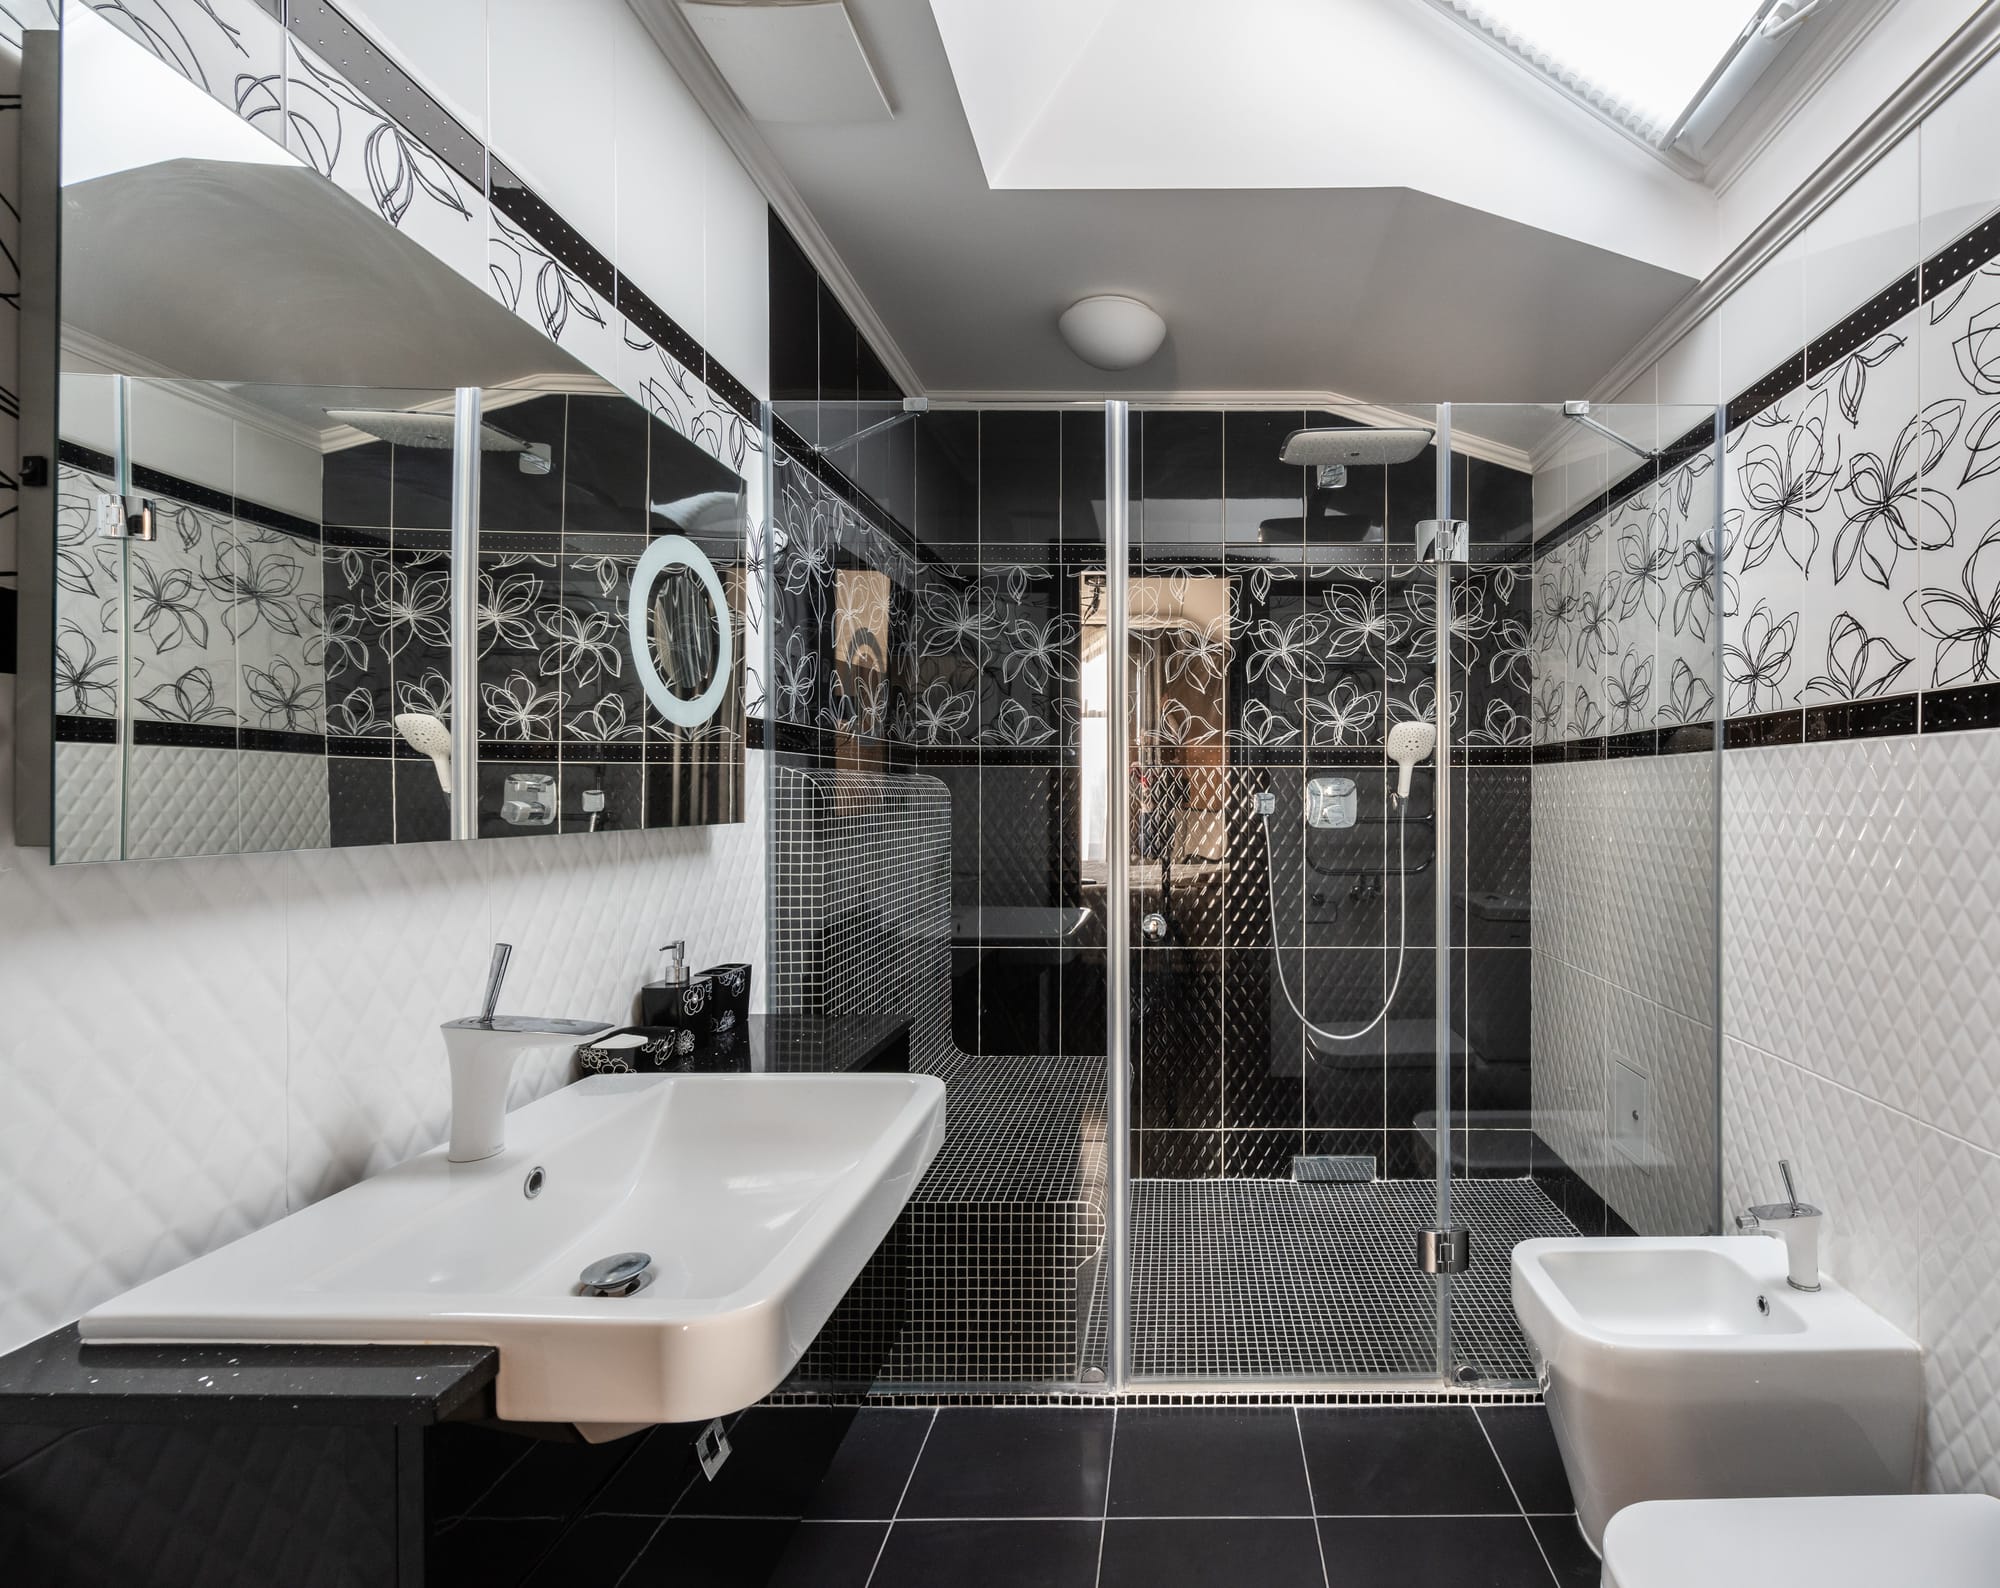 banheiro preto e branco moderno com design floral nos azulejos da parede